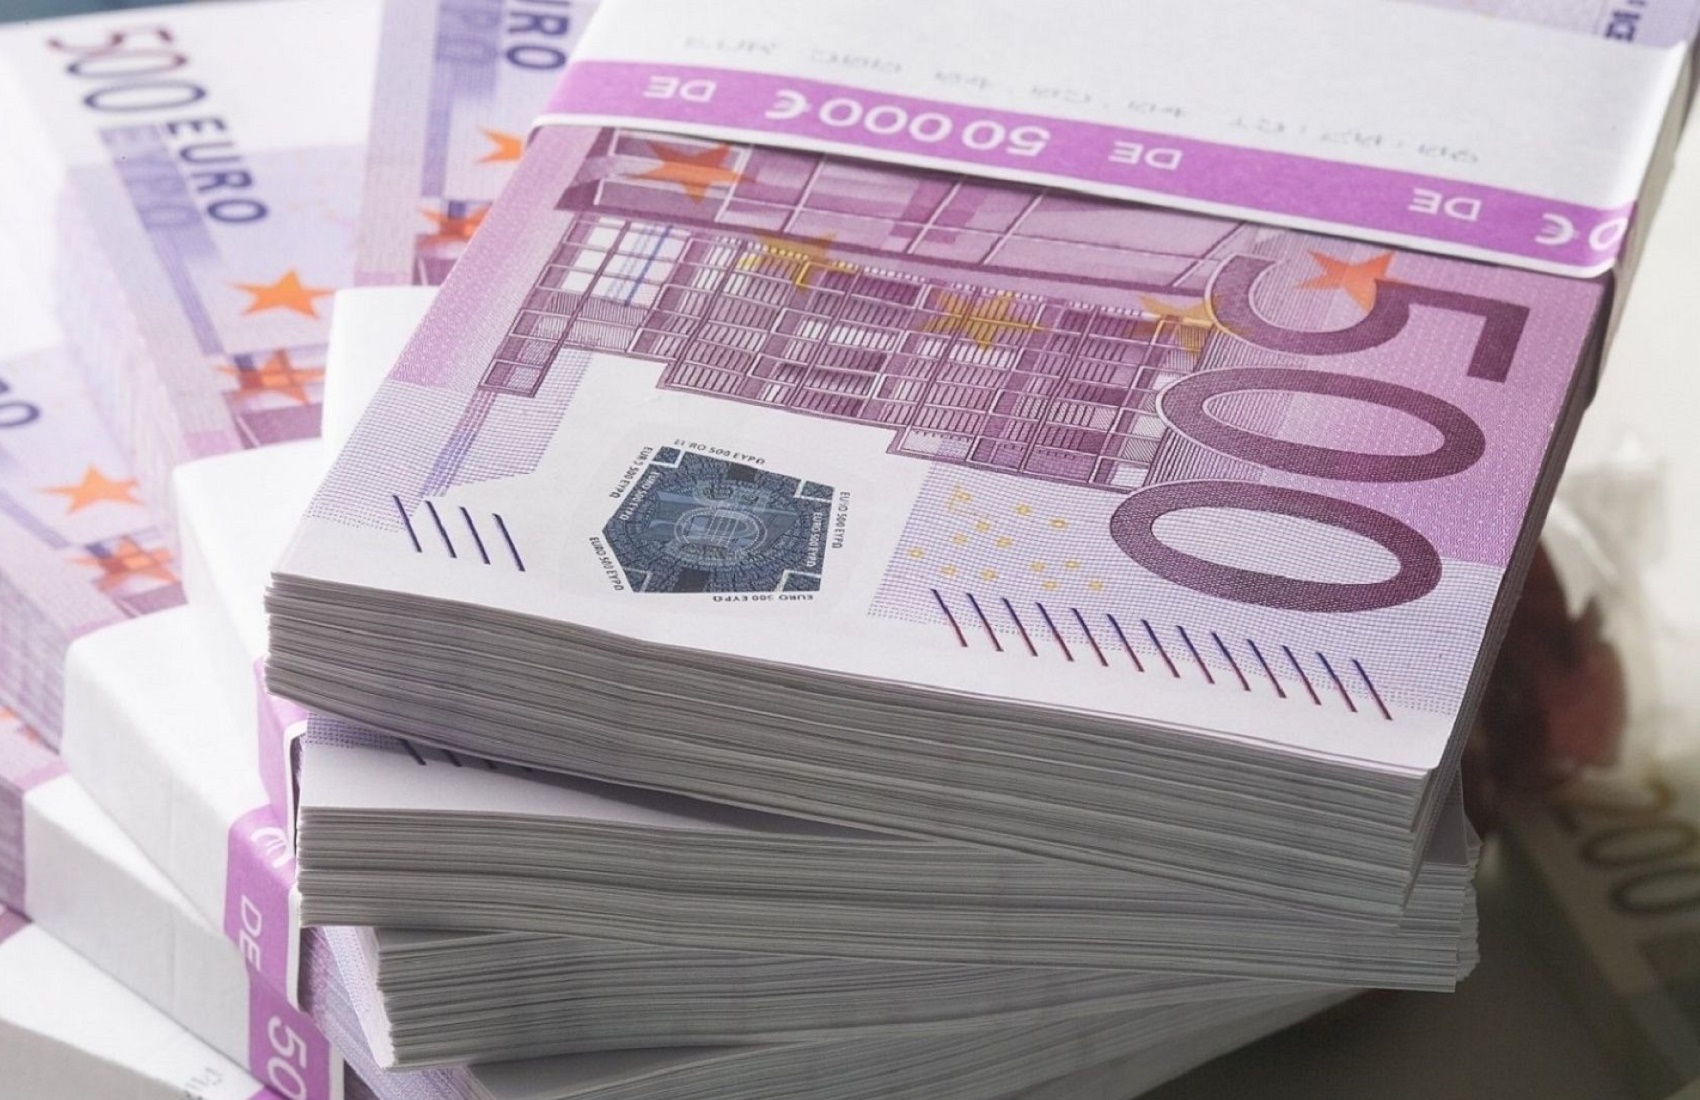 Впервые за три года курс евро поднялся выше 34 гривен